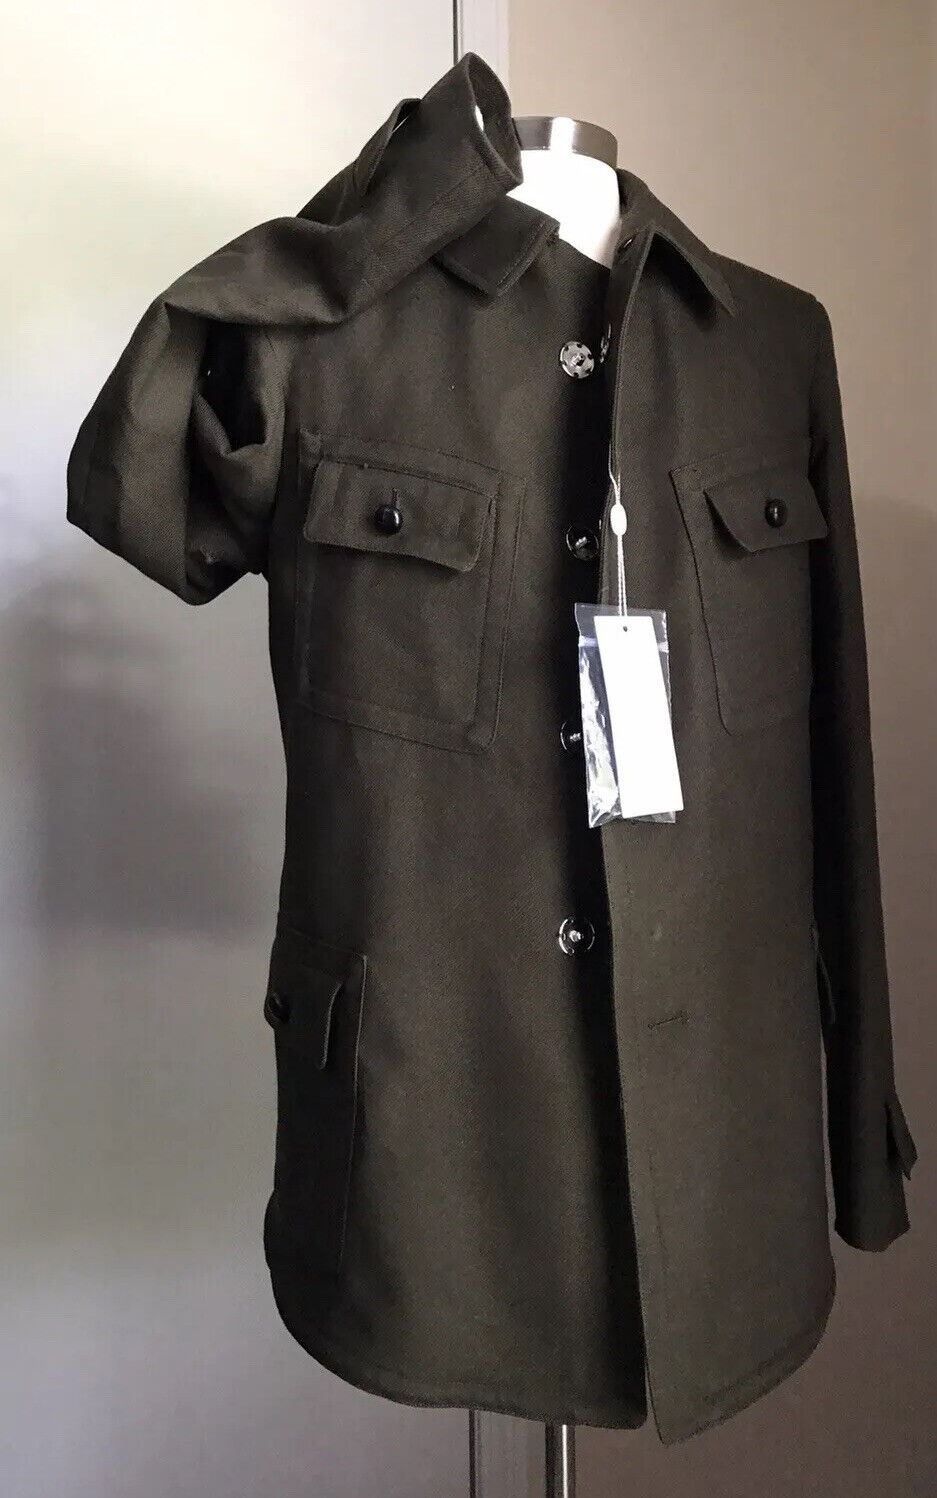 New $2790 Maison Margiela Kaban Faux Fur-Lined Jacket Coat Olive Green 38/48 Ita